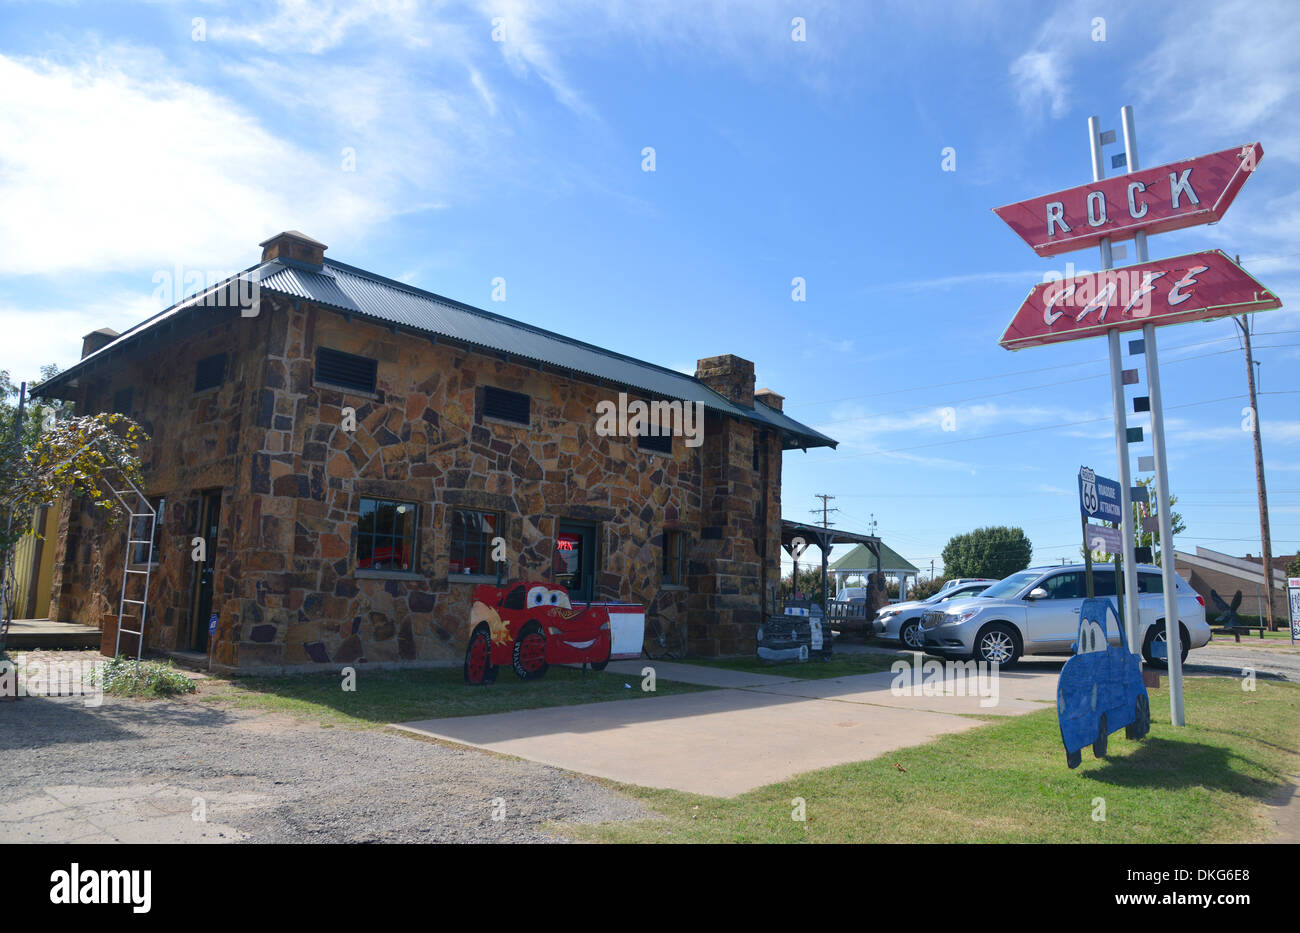 Rock Cafe, Stroud, Oklahoma. 'Route 66 voitures sur la route' célèbre diner Banque D'Images